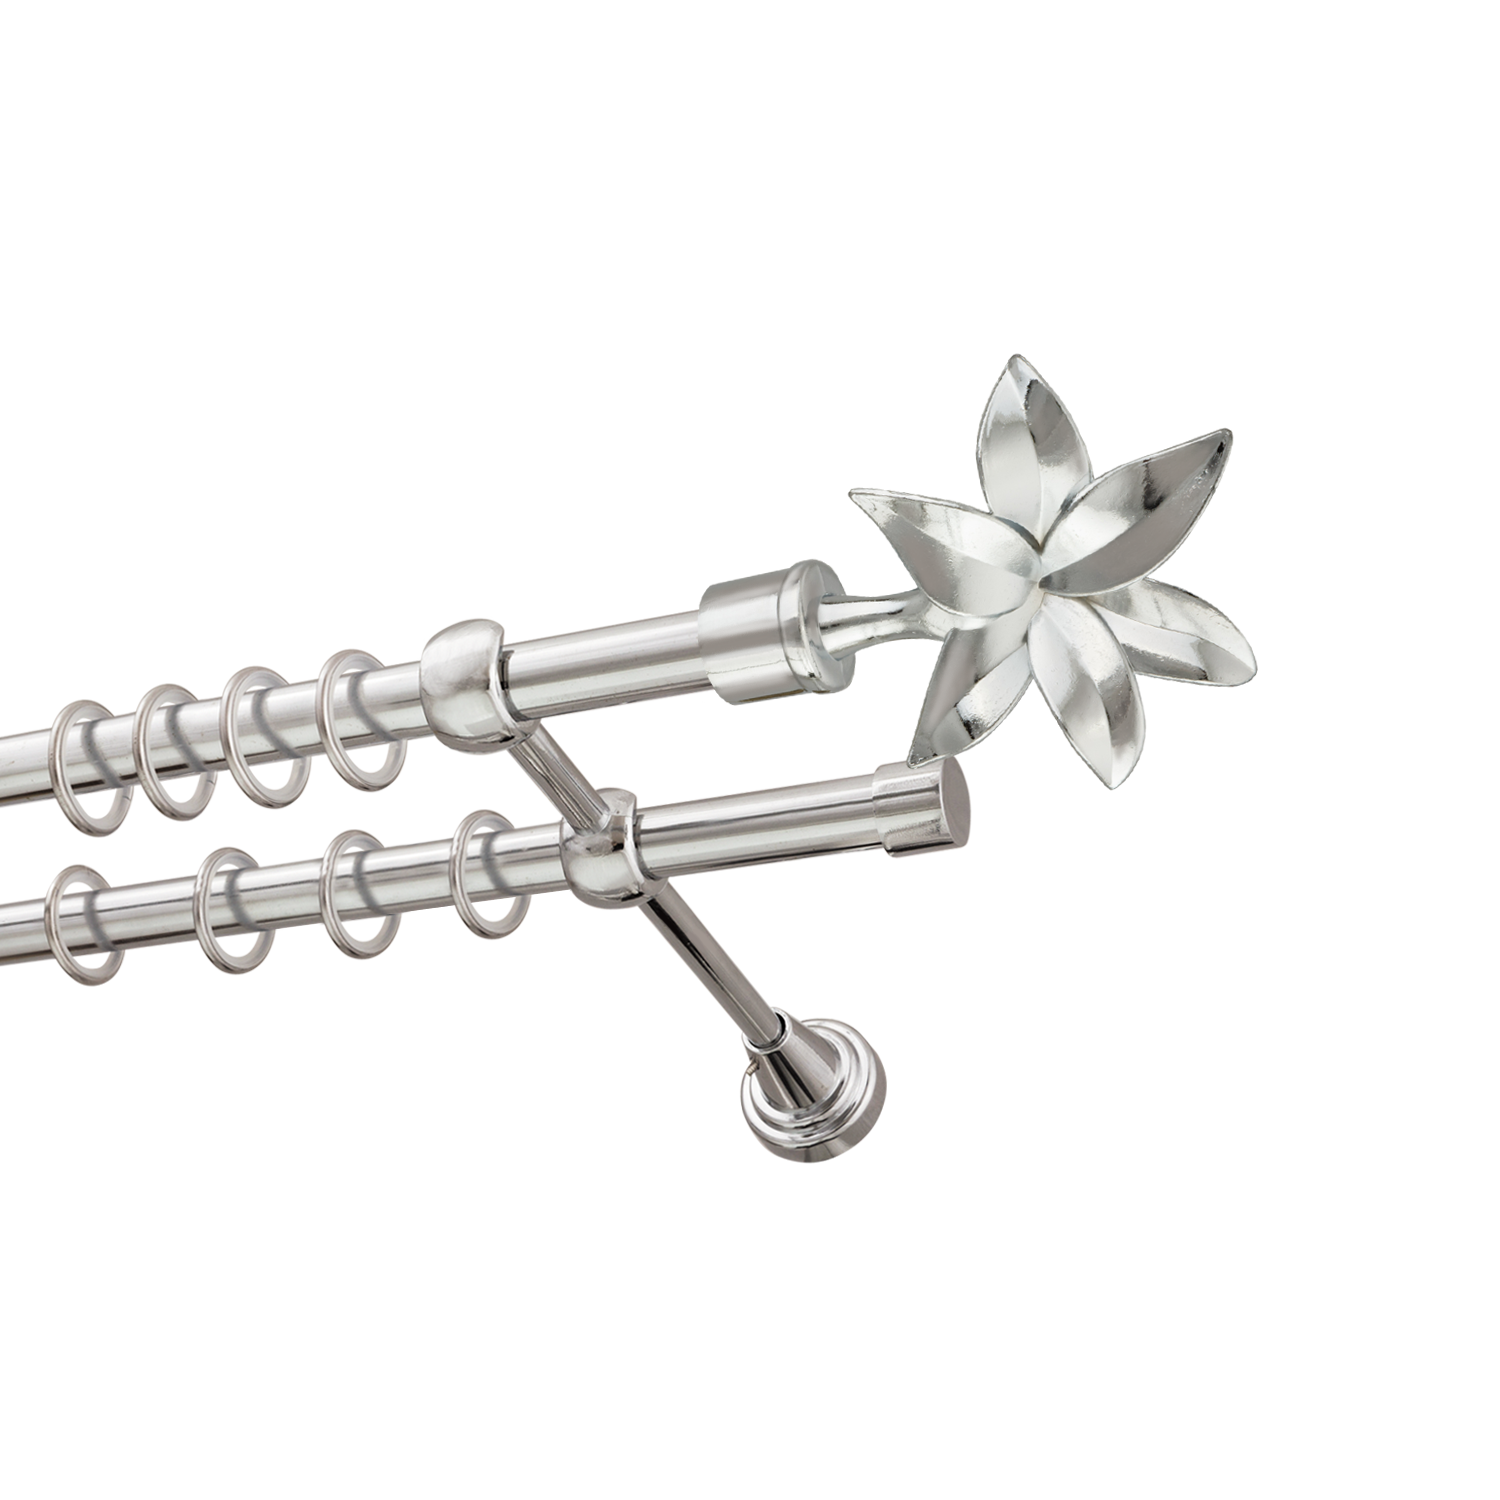 Металлический карниз для штор Магнолия, двухрядный 16/16 мм, серебро, гладкая штанга, длина 180 см - фото Wikidecor.ru